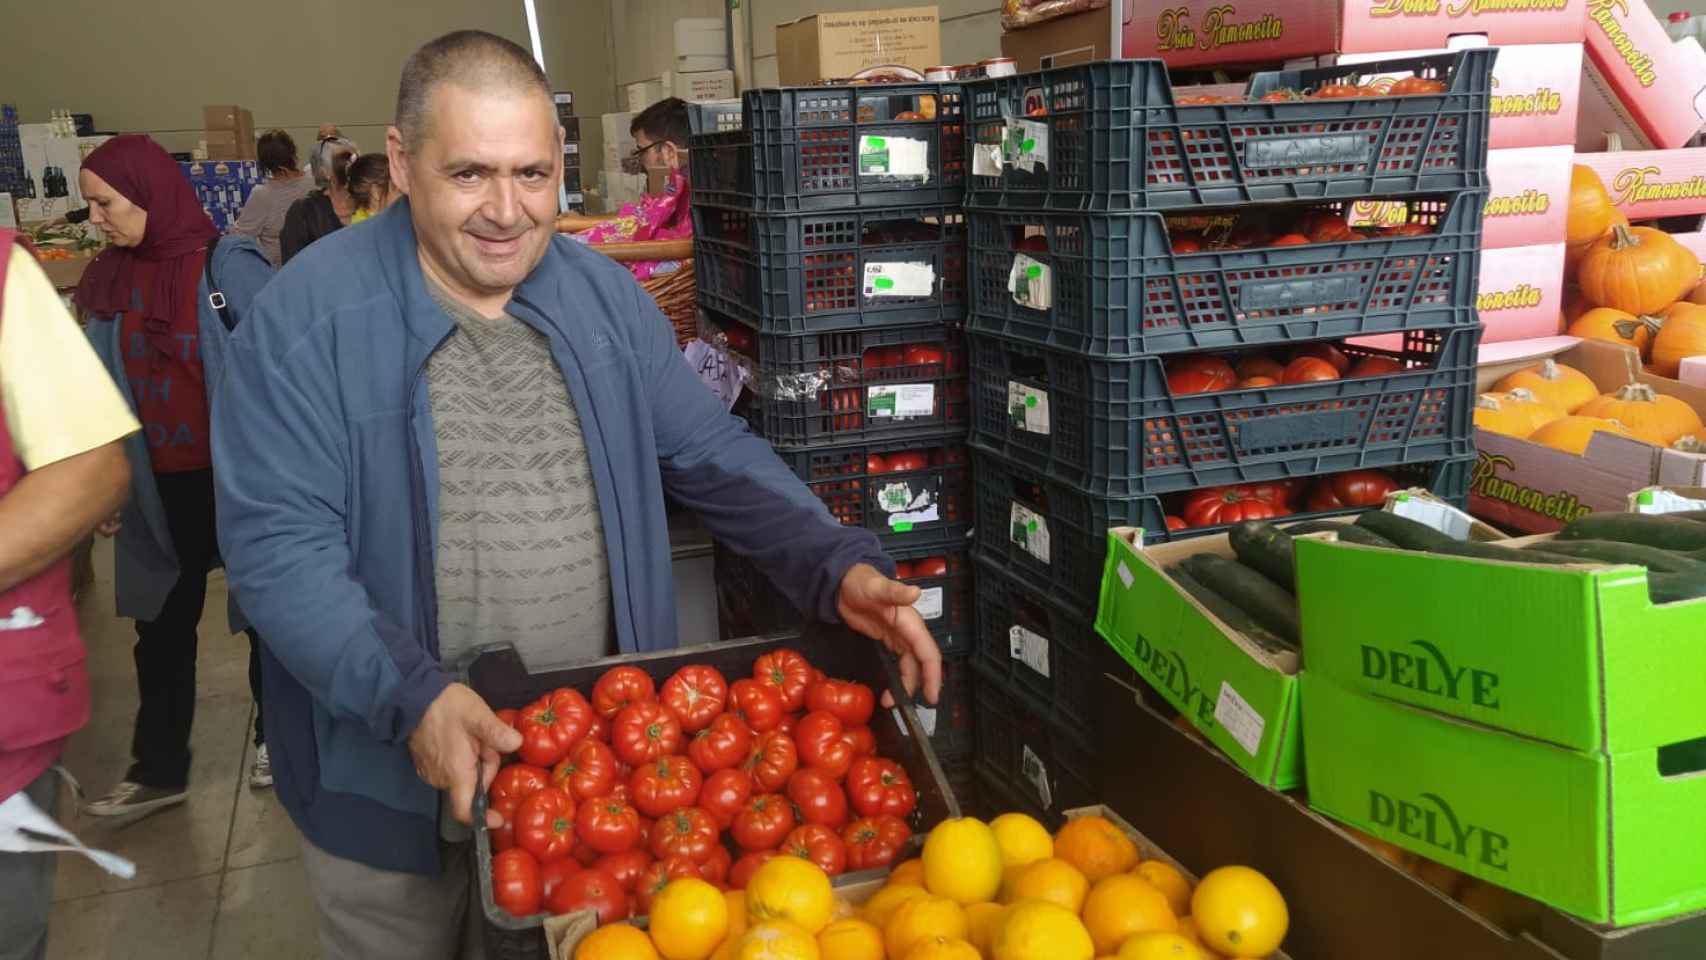 Carlos Moreno muestra los tomates que está vendiendo. De fondo, más cajas con los mismos.